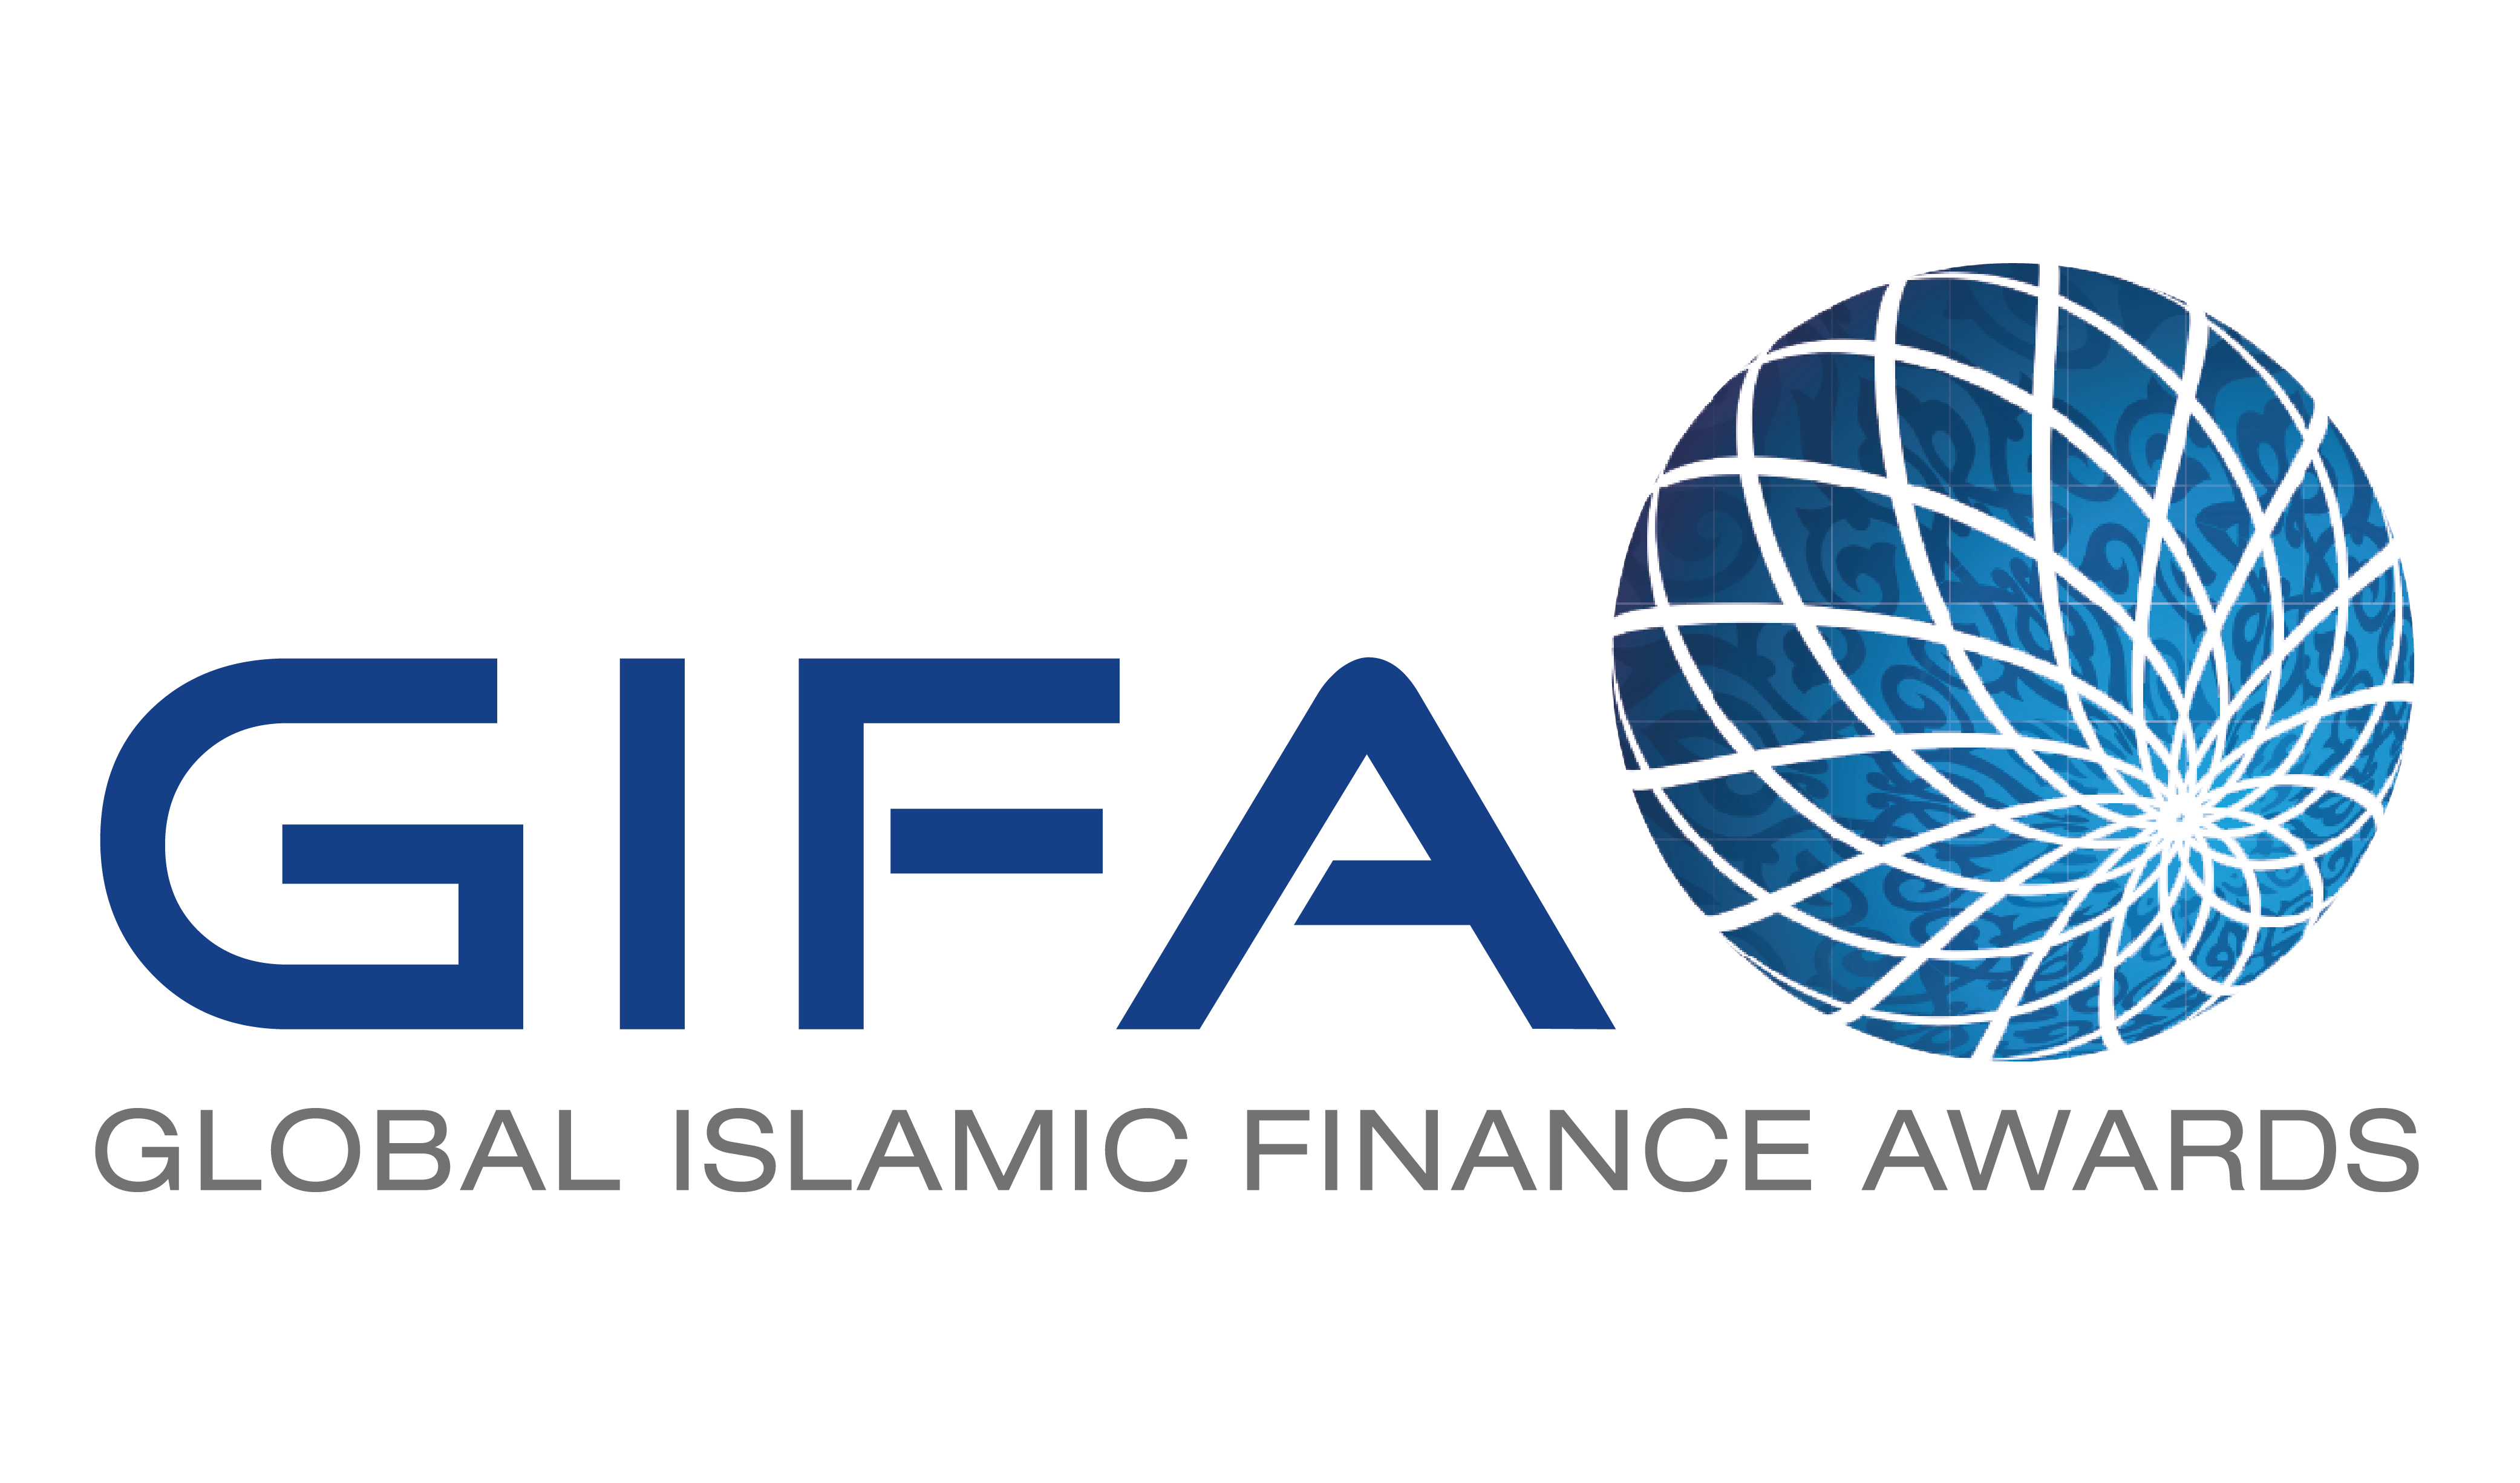 Global Islamic Finance Awards (GIFA)